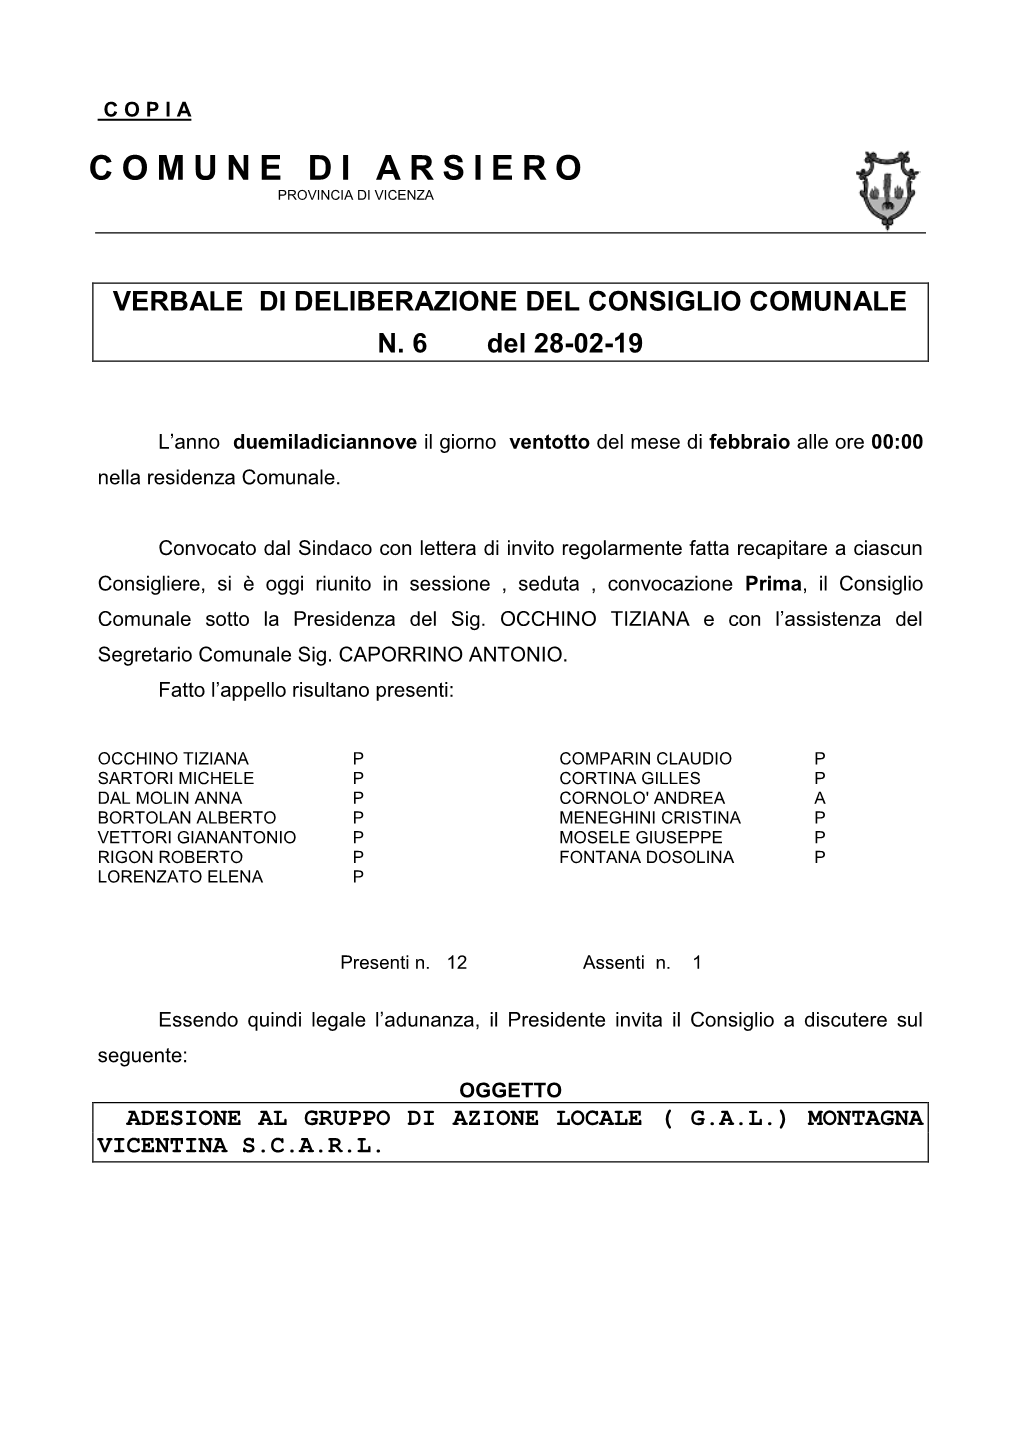 Adesione Al Gruppo Di Azione Locale ( G.A.L.) Montagna Vicentina S.C.A.R.L